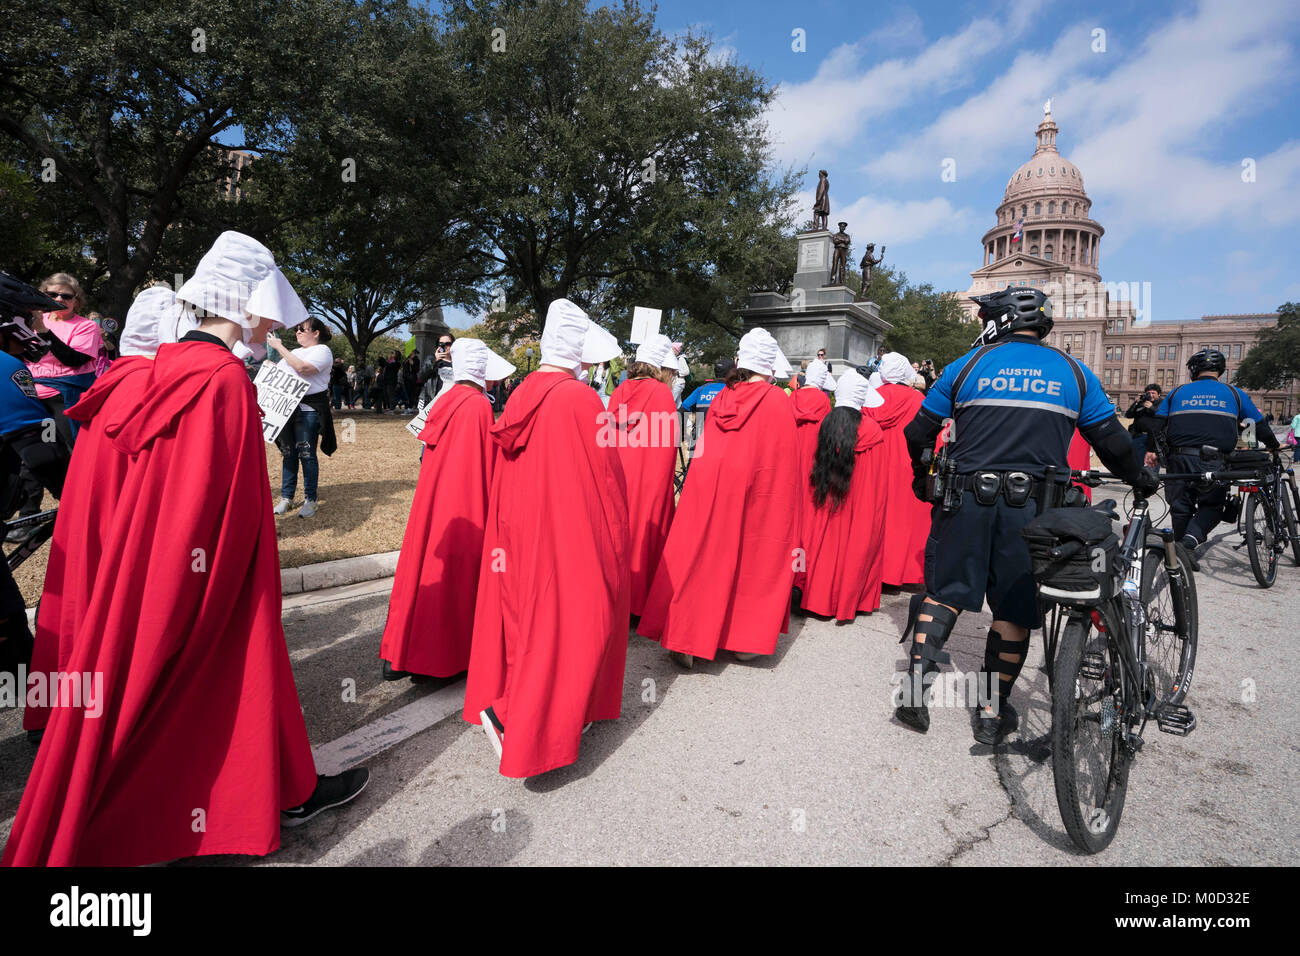 Mujeres vestidas como personajes del libro de Margaret Atwood "Handmaid's Tale' participan en un mitin en el Capitolio de Texas, en Austin para conmemorar el primer aniversario de la marcha de mujeres del Washington y políticas que se oponen a la promulgada durante la Presidencia de Donald Trump en su primer año en el cargo. Foto de stock